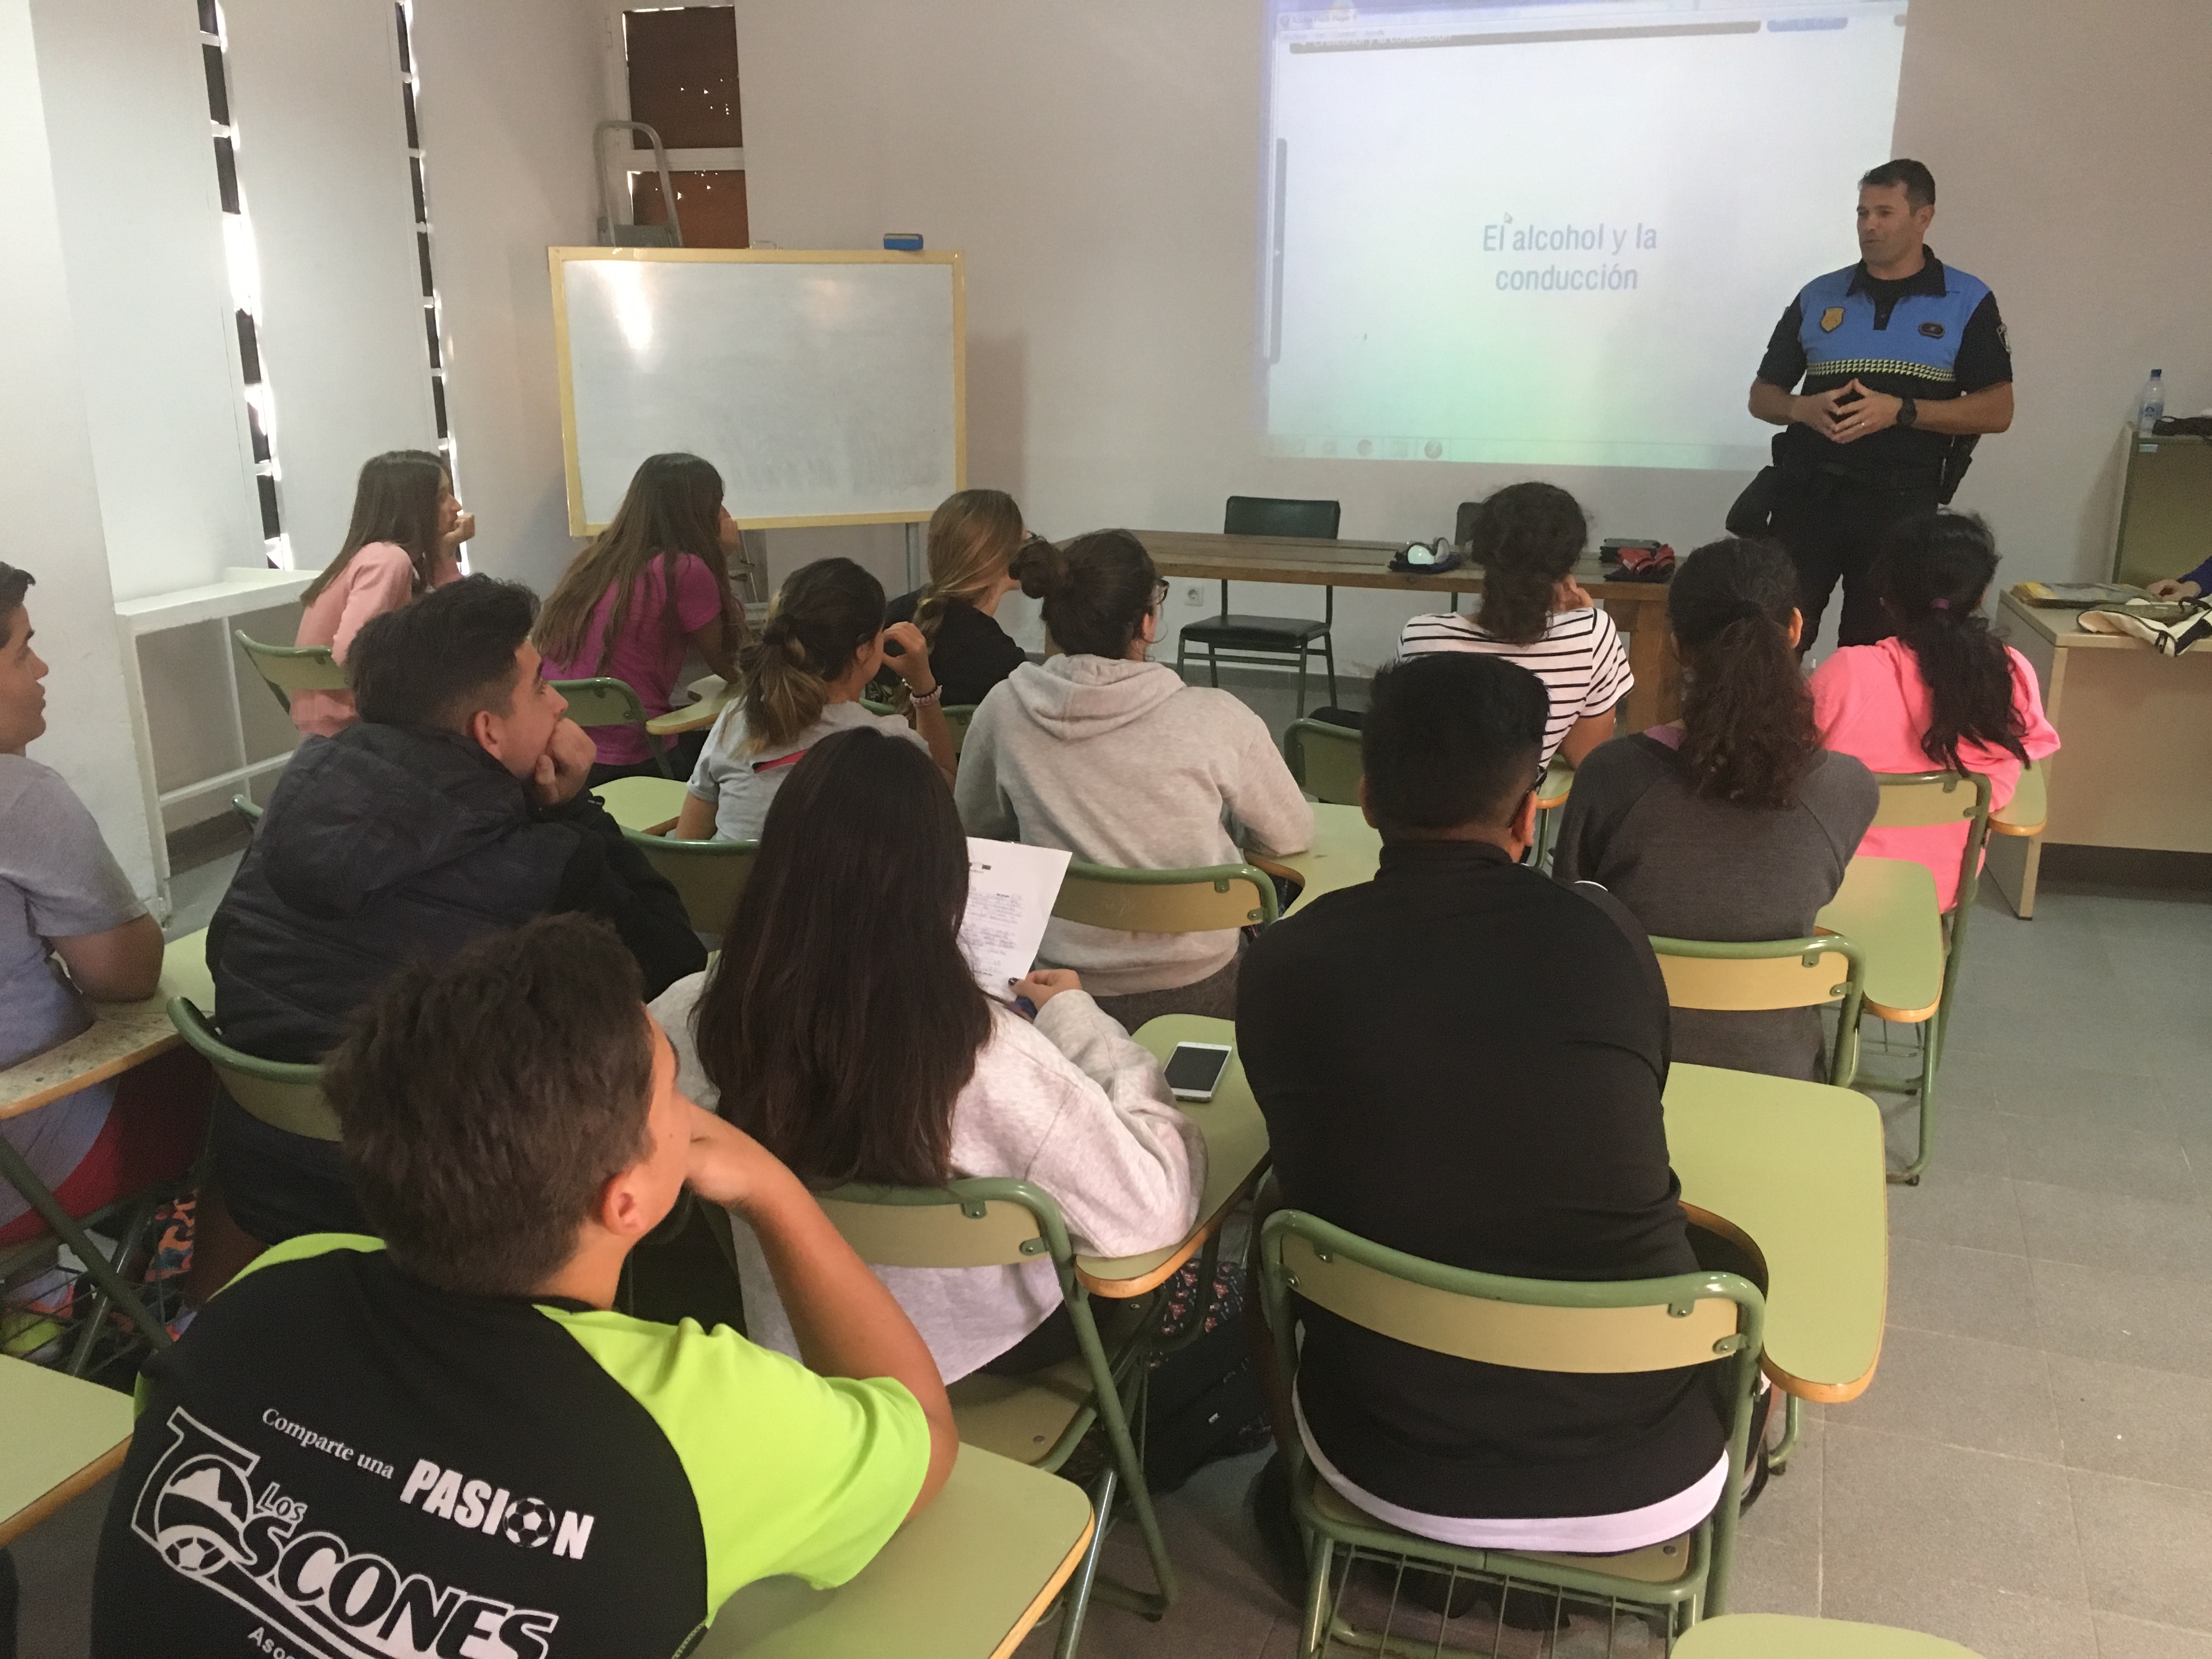 Presentación del Programa "Con las drogas, tú decides" en los institutos de La Oliva